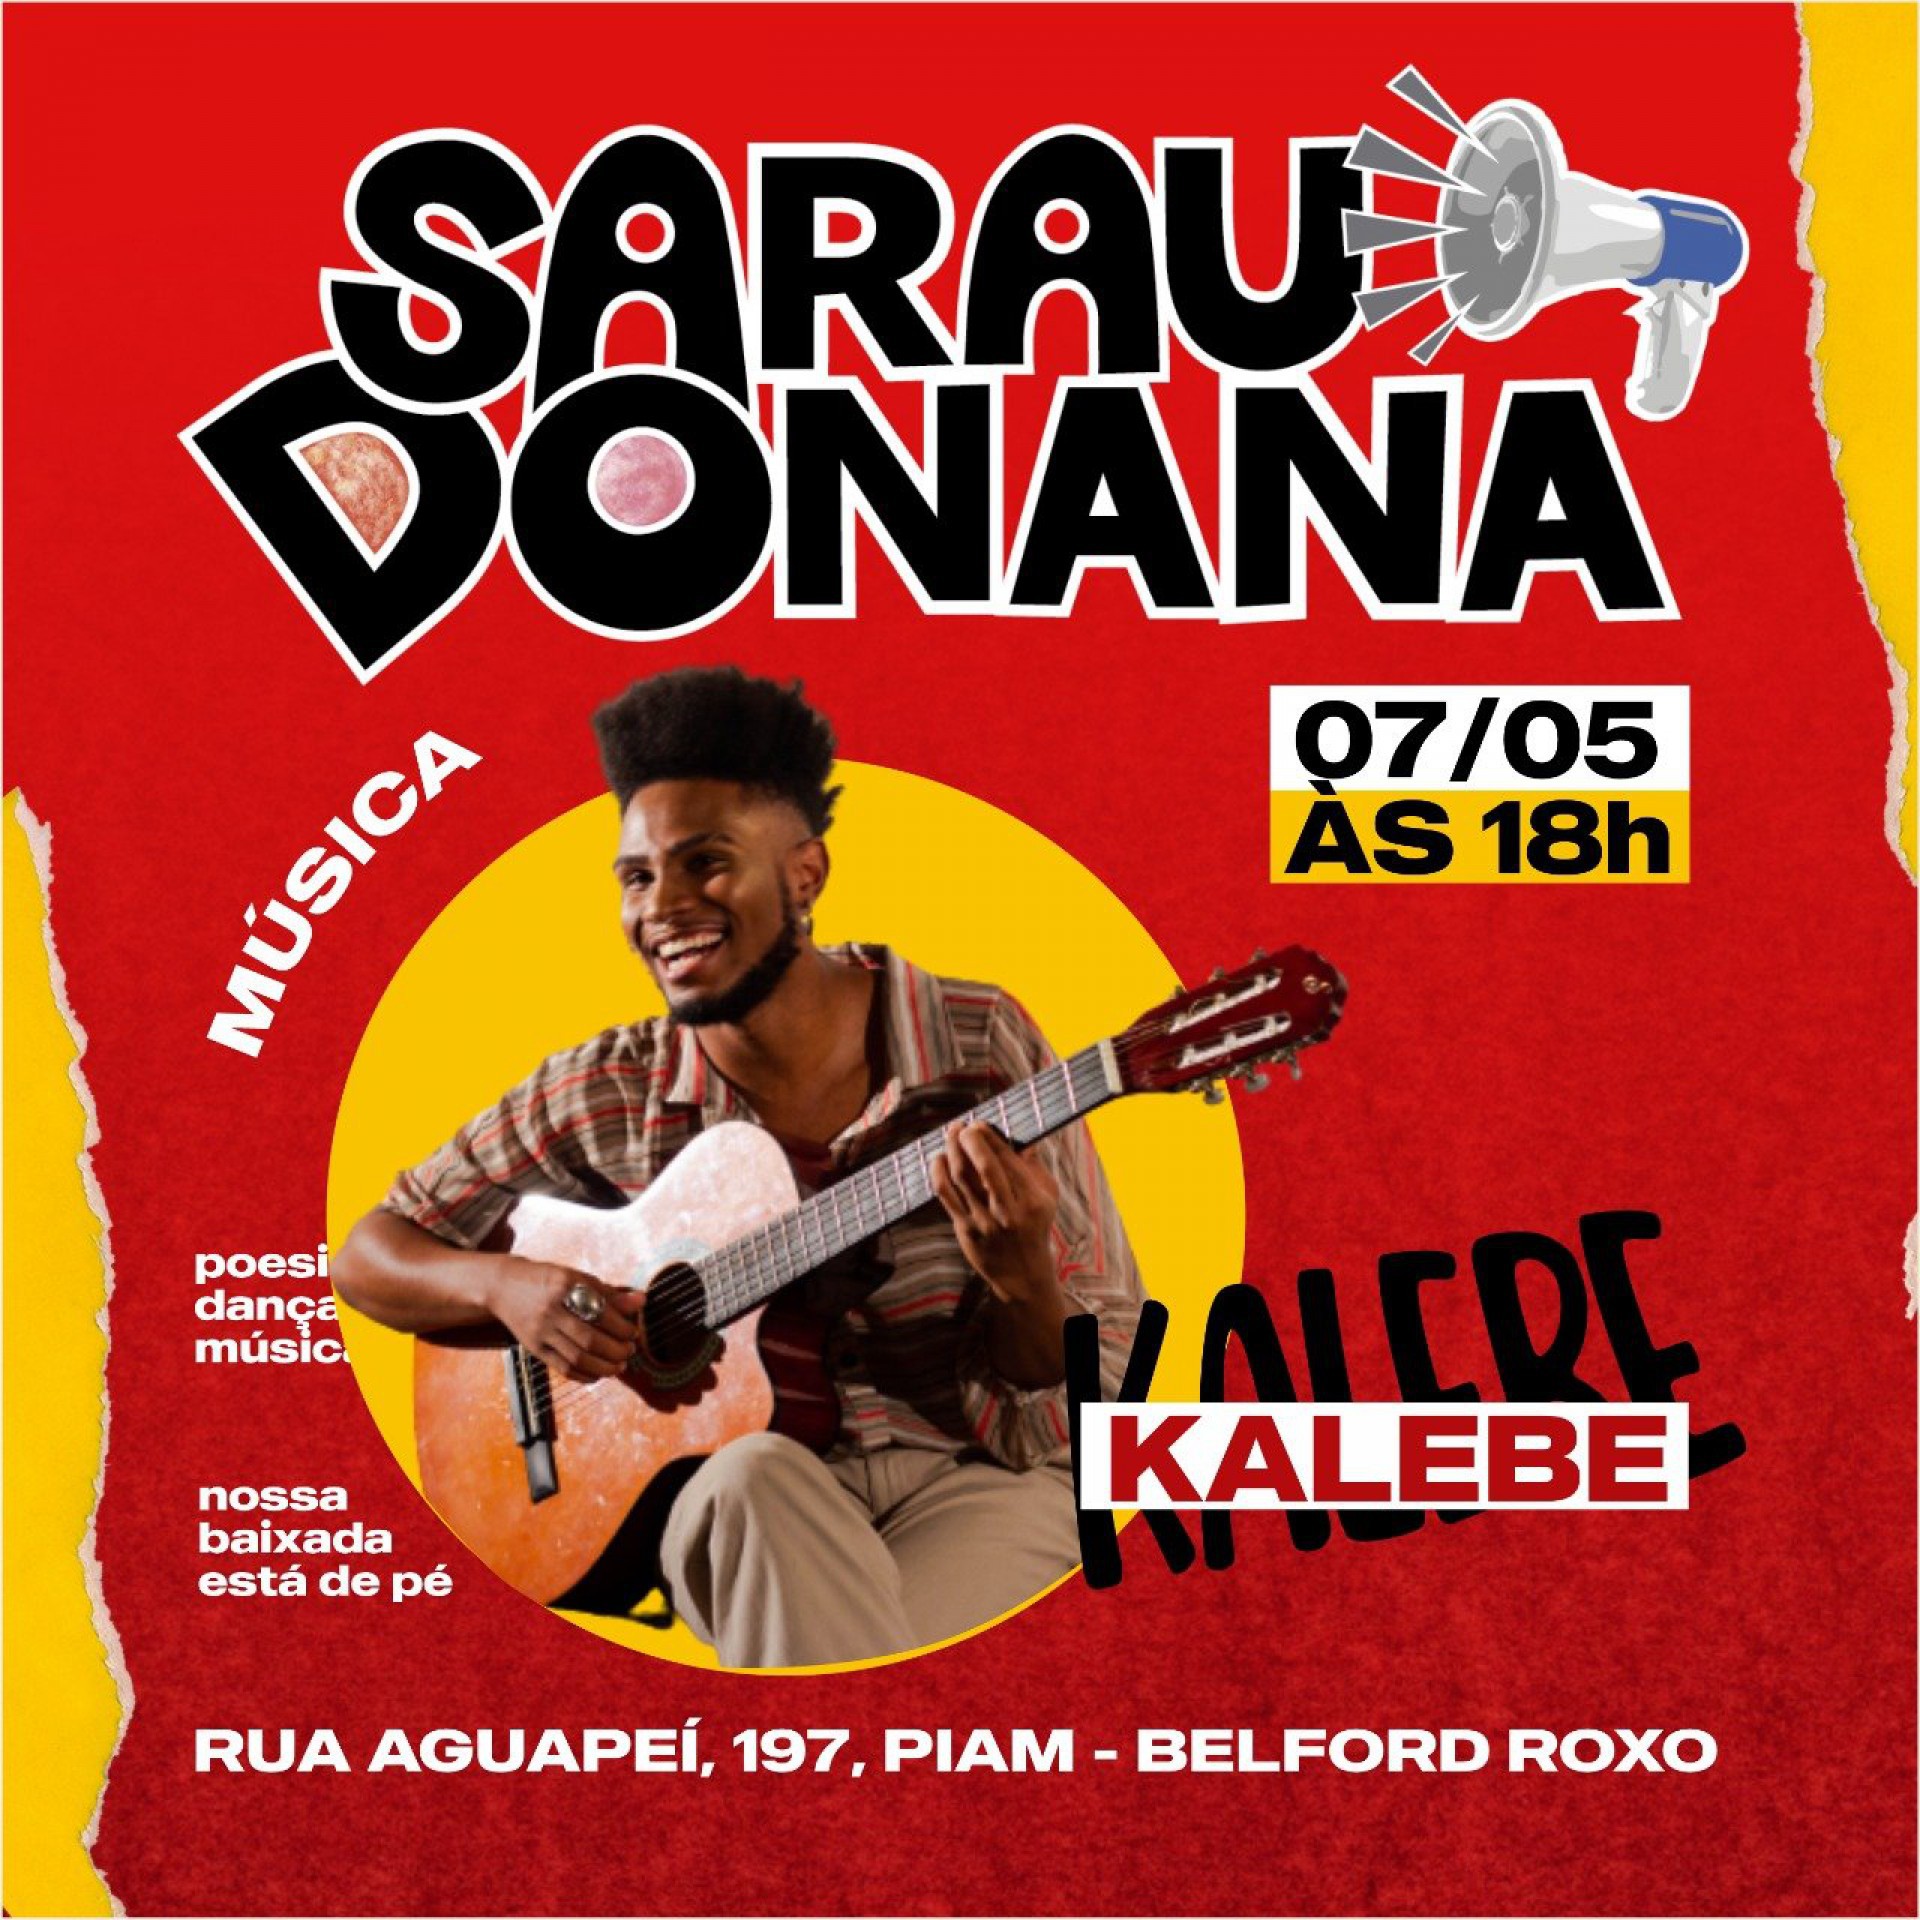 O cantor e compositor será uma das atrações do Sarau Donana - Divulgação